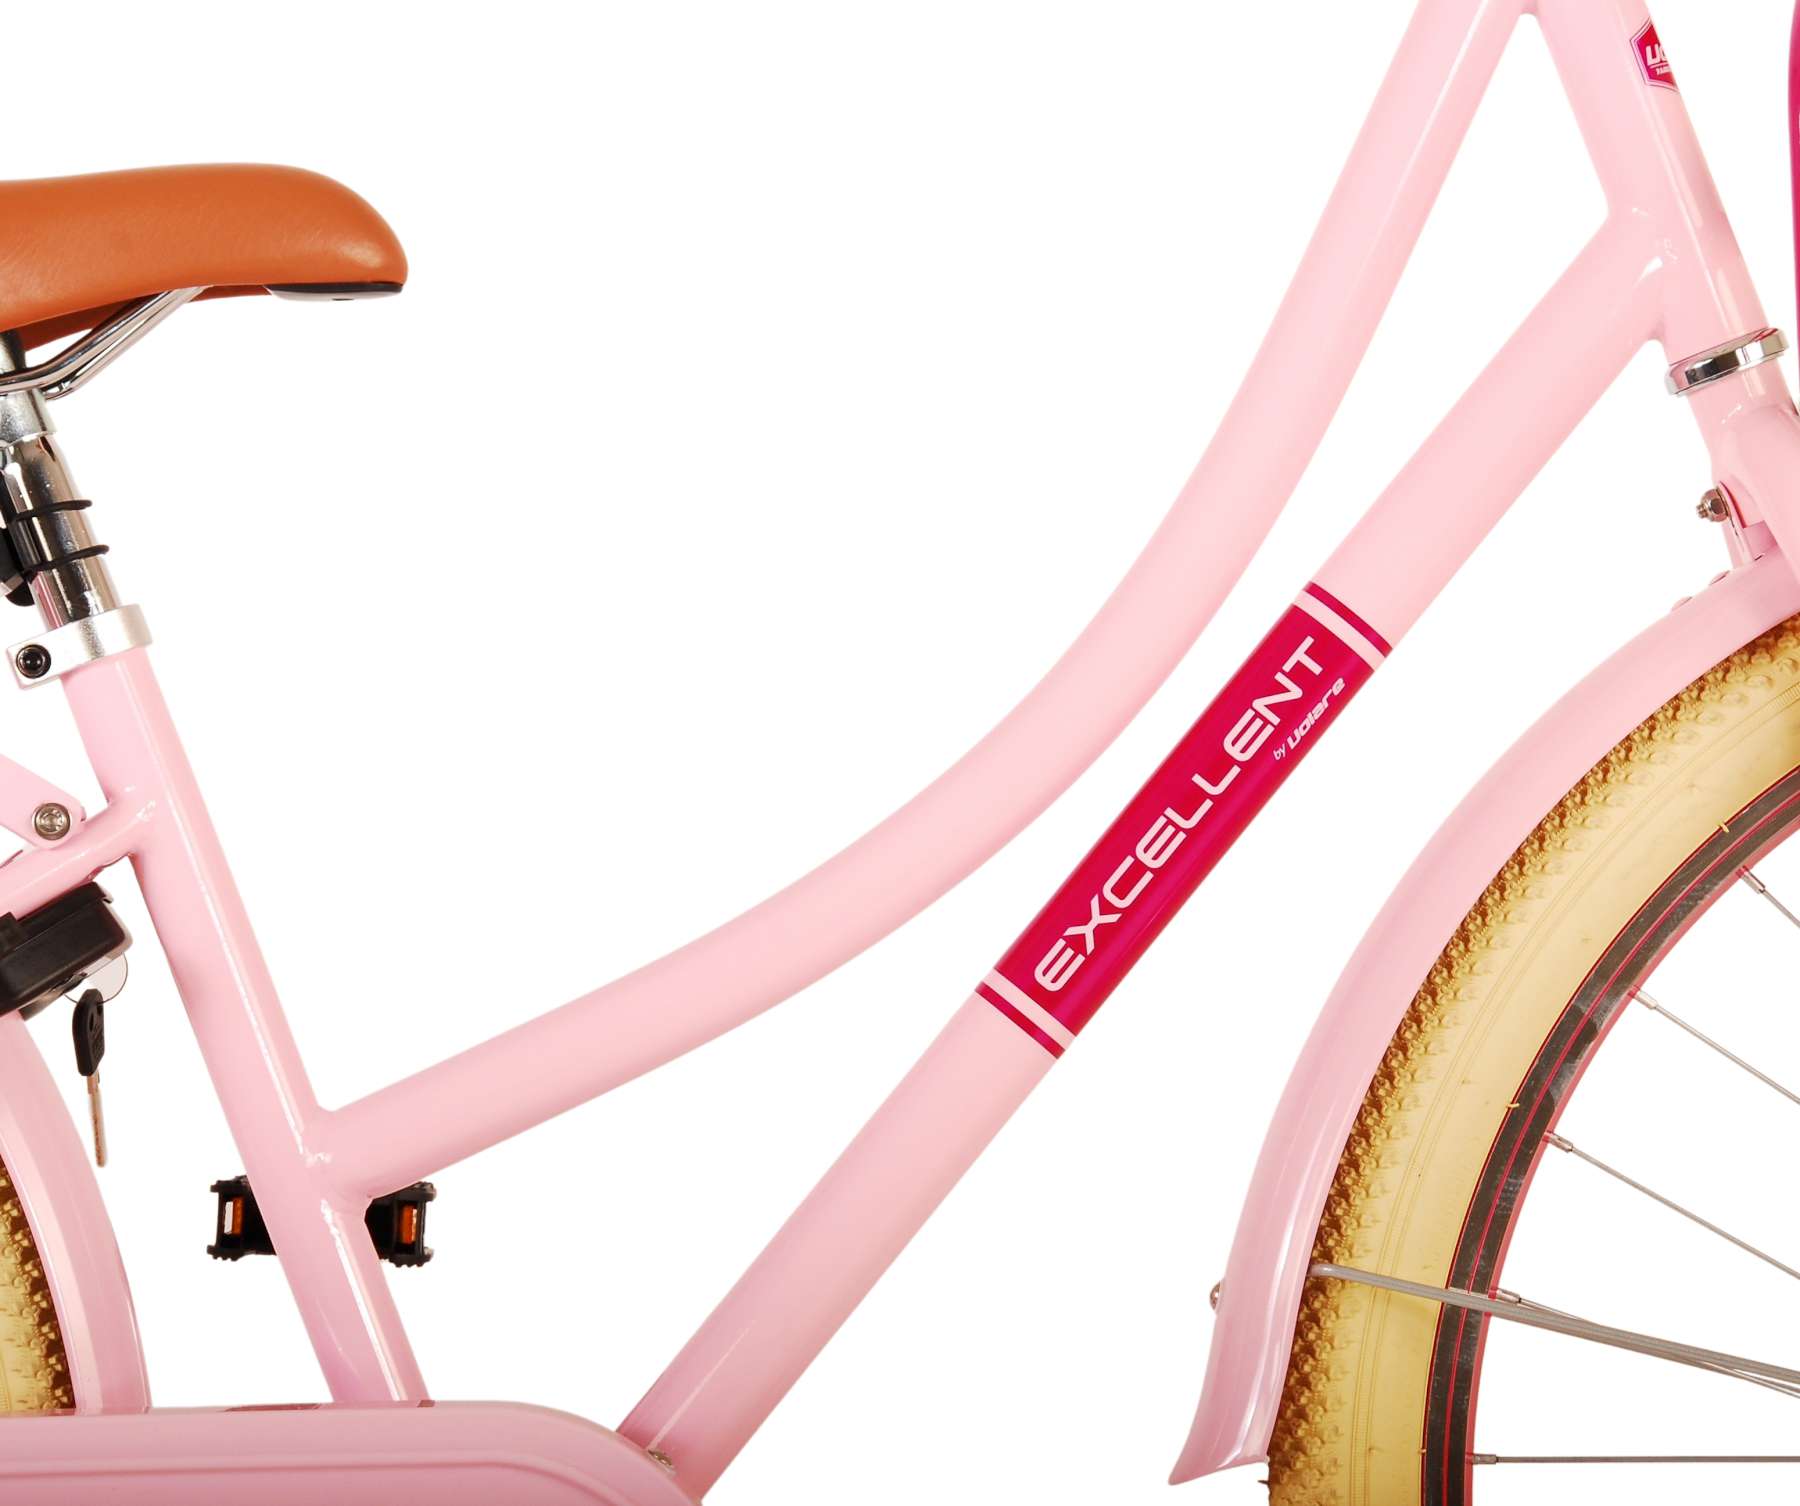 Kinderfahrrad Excellent Fahrrad für Mädchen 26 Zoll Kinderrad in Rosa